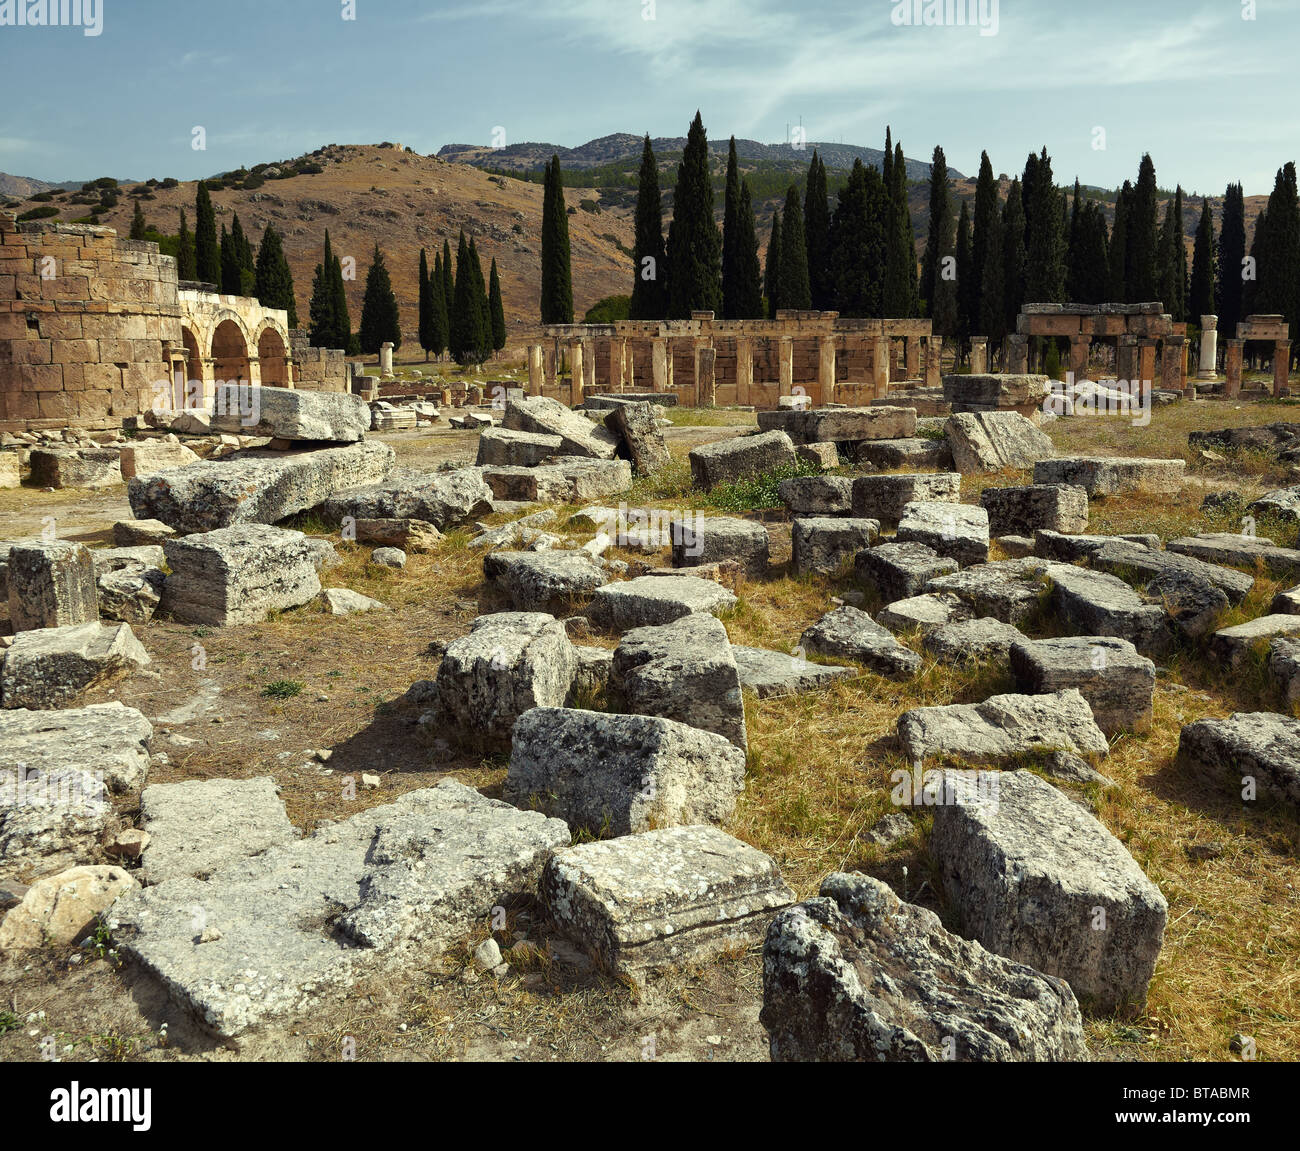 Les ruines de la ville antique d'Hiérapolis Pamukkale sur la colline, la Turquie. Couleurs artistique ajoutée. Banque D'Images